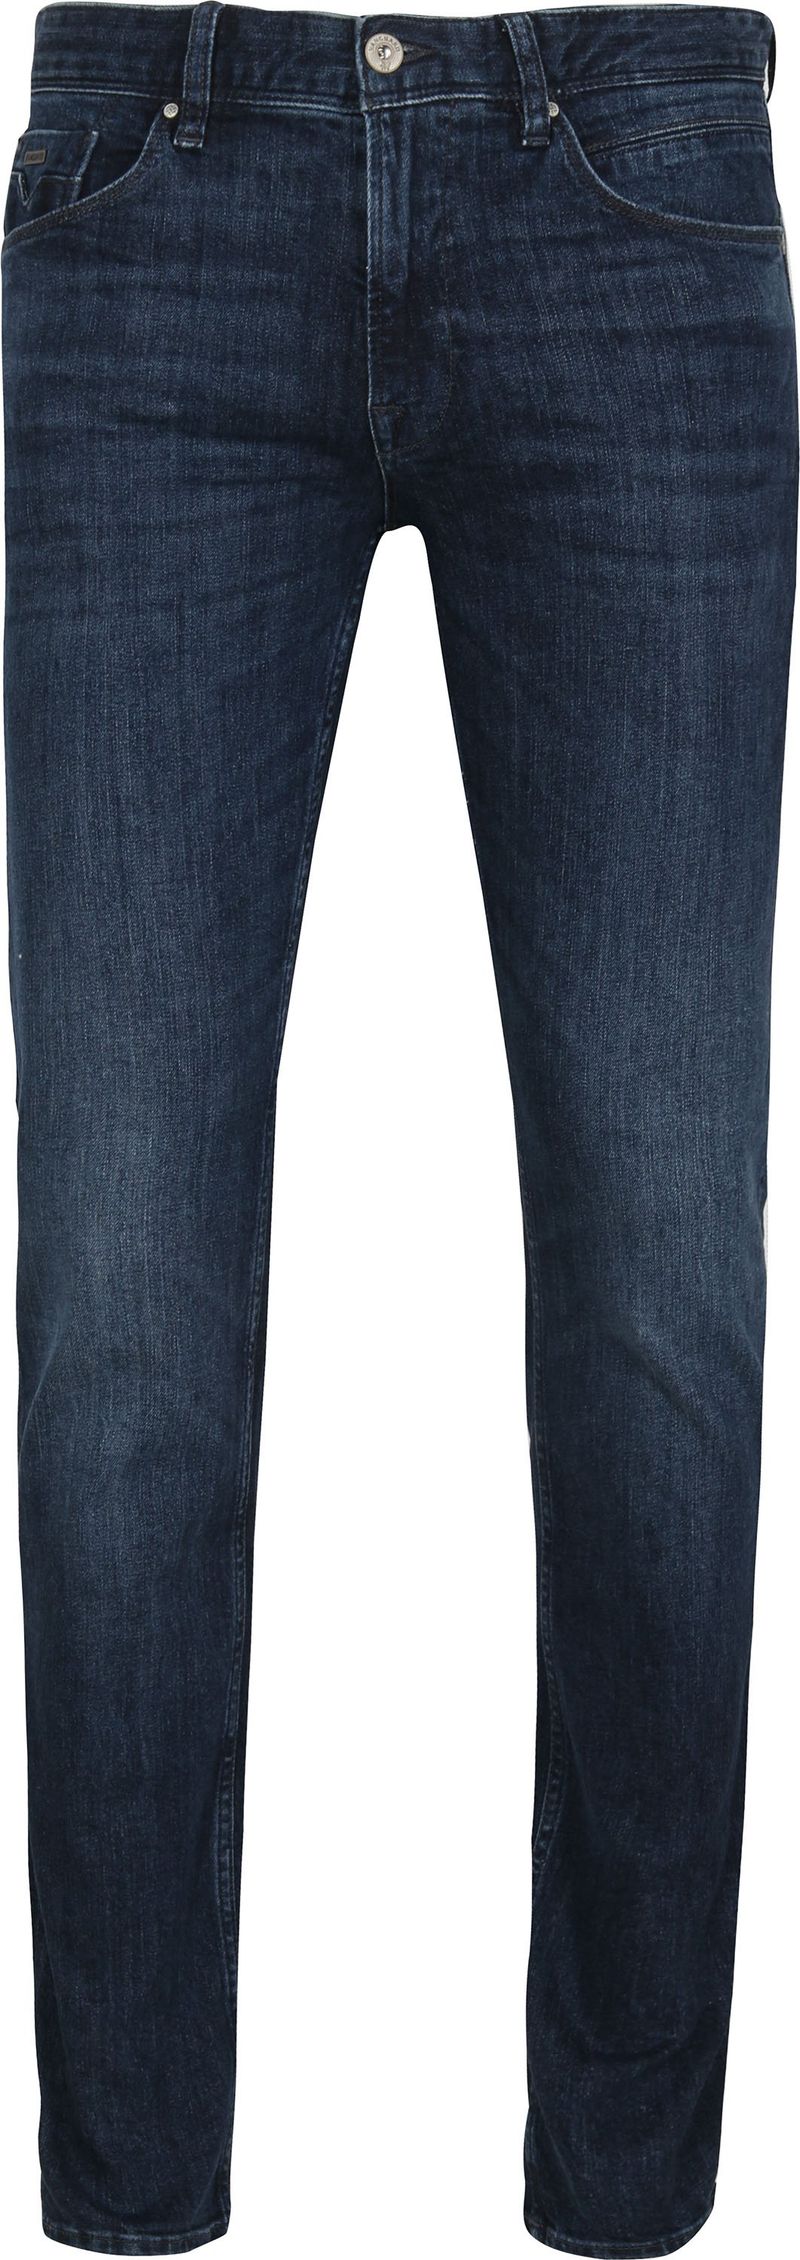 Vanguard Jeans V7 Rider Steel Washed Blau - Größe W 30 - L 34 günstig online kaufen